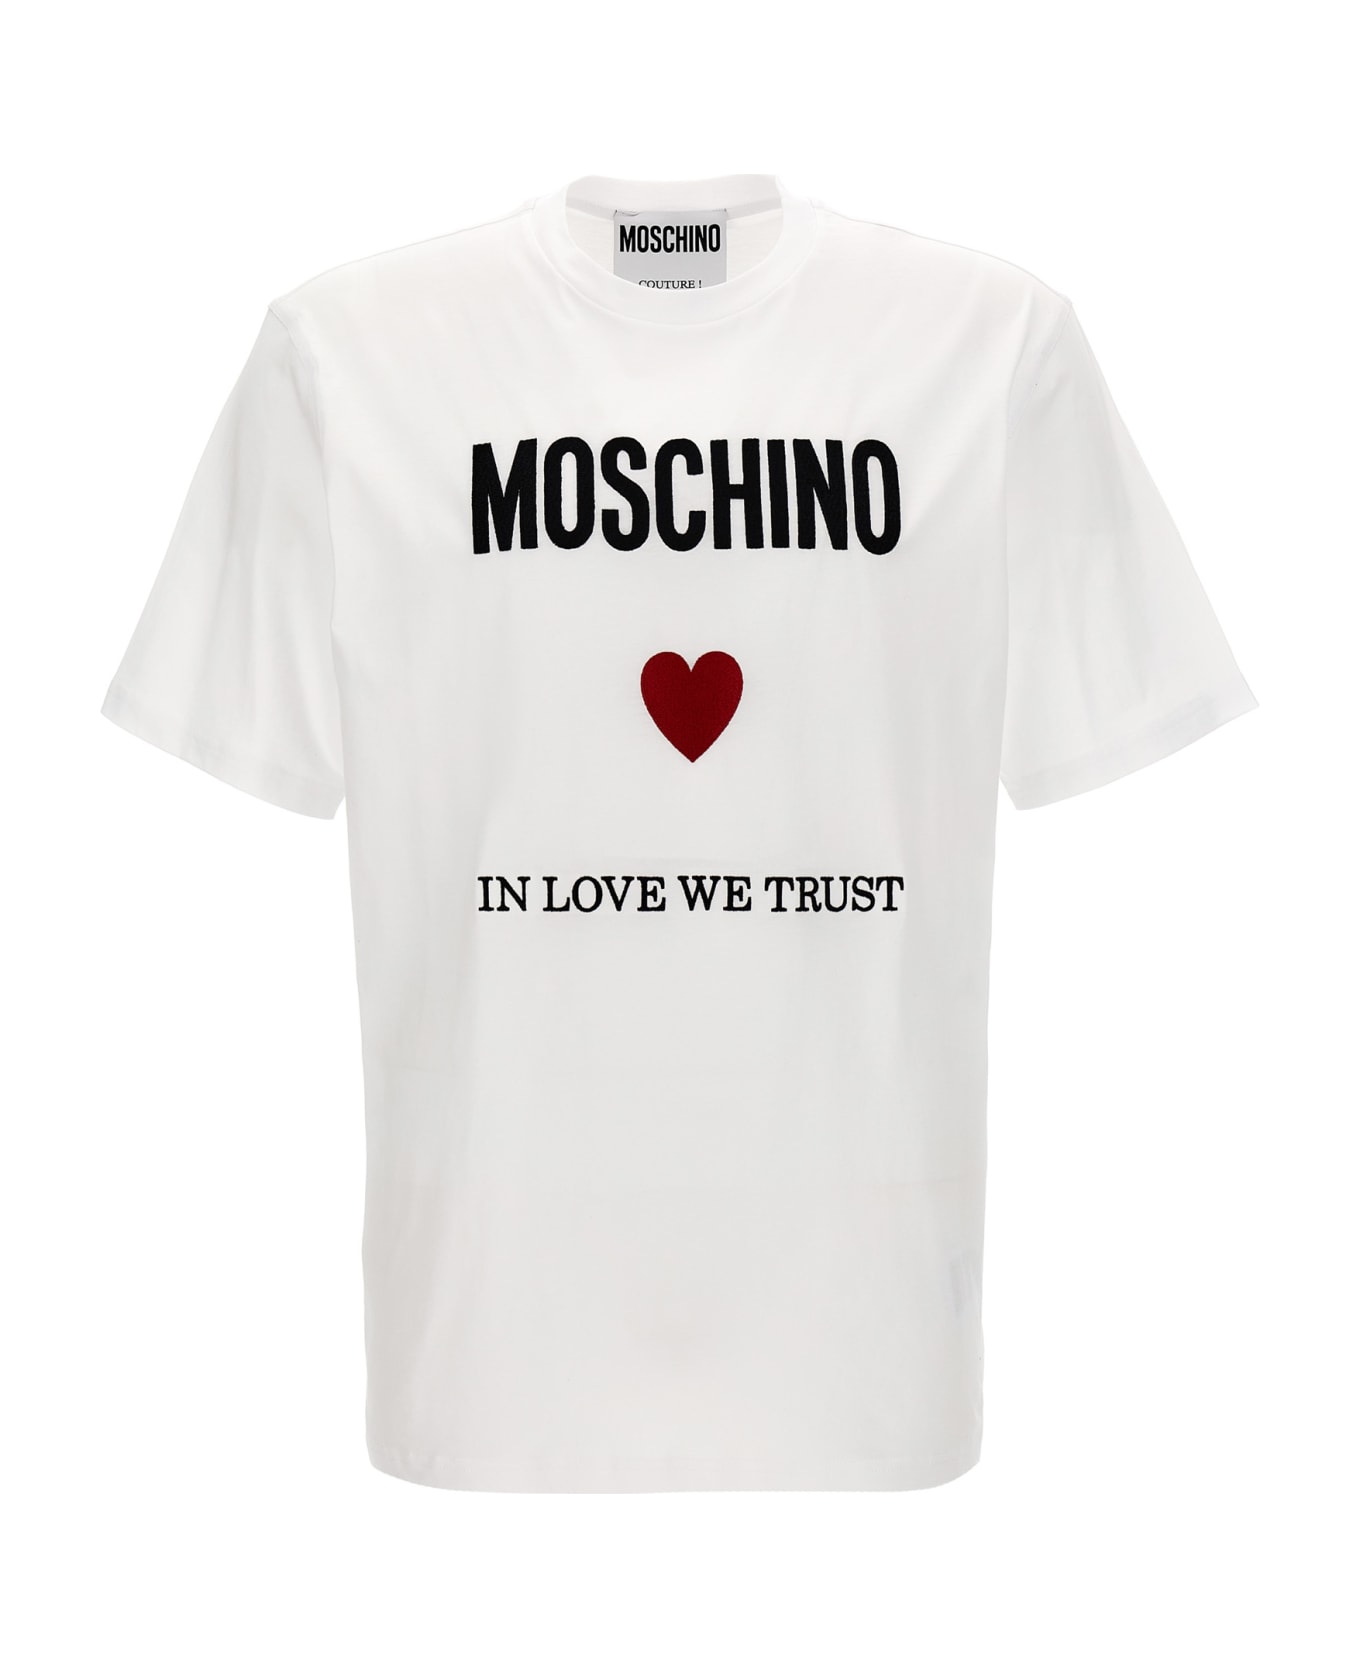 Moschino 'in Love We Trust' T-shirt - White シャツ